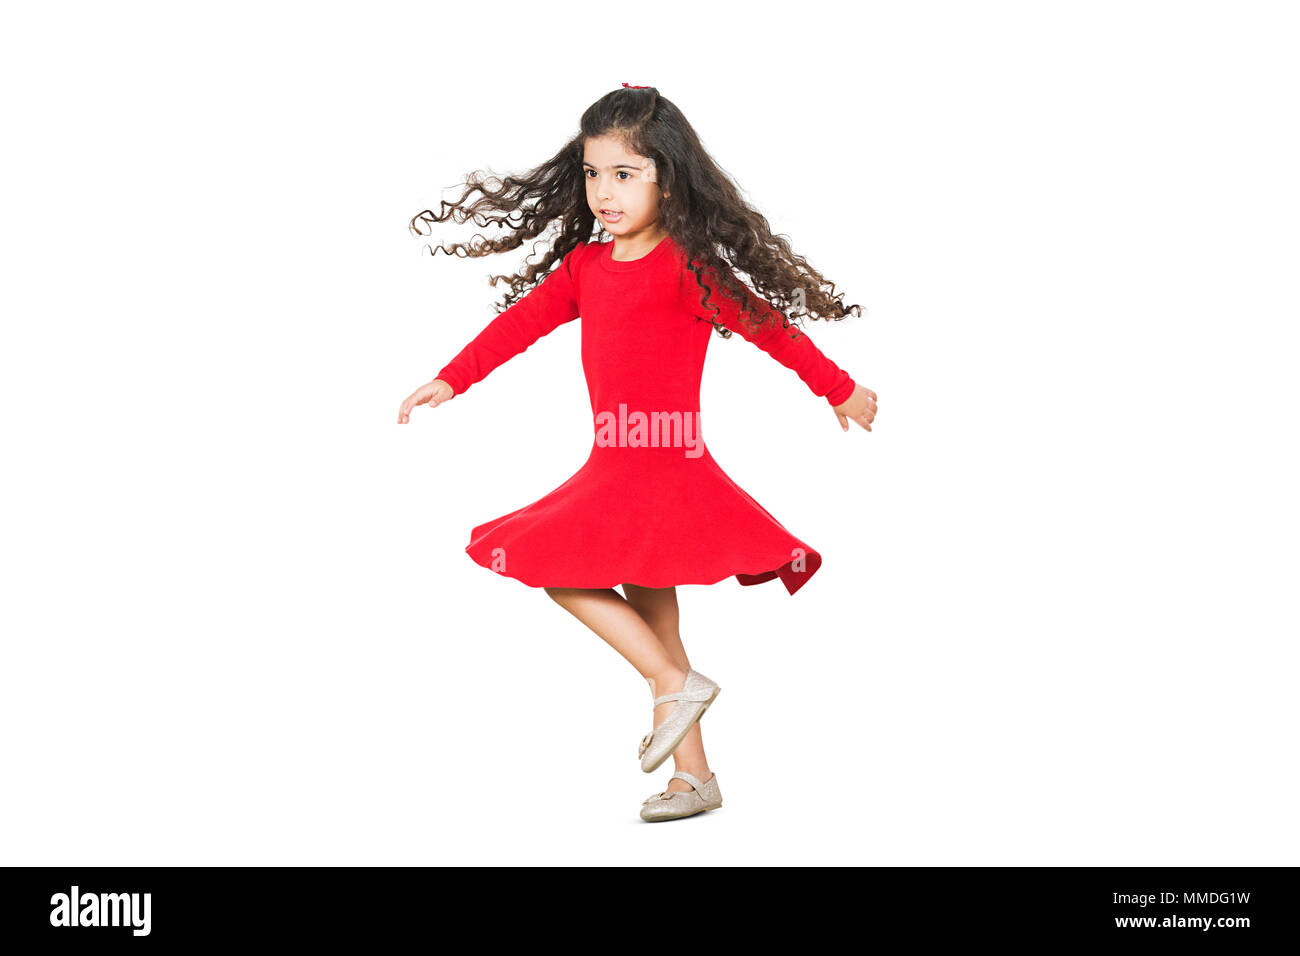 Une petite fille espiègle tournant danse joyeuse fun heureux Banque D'Images